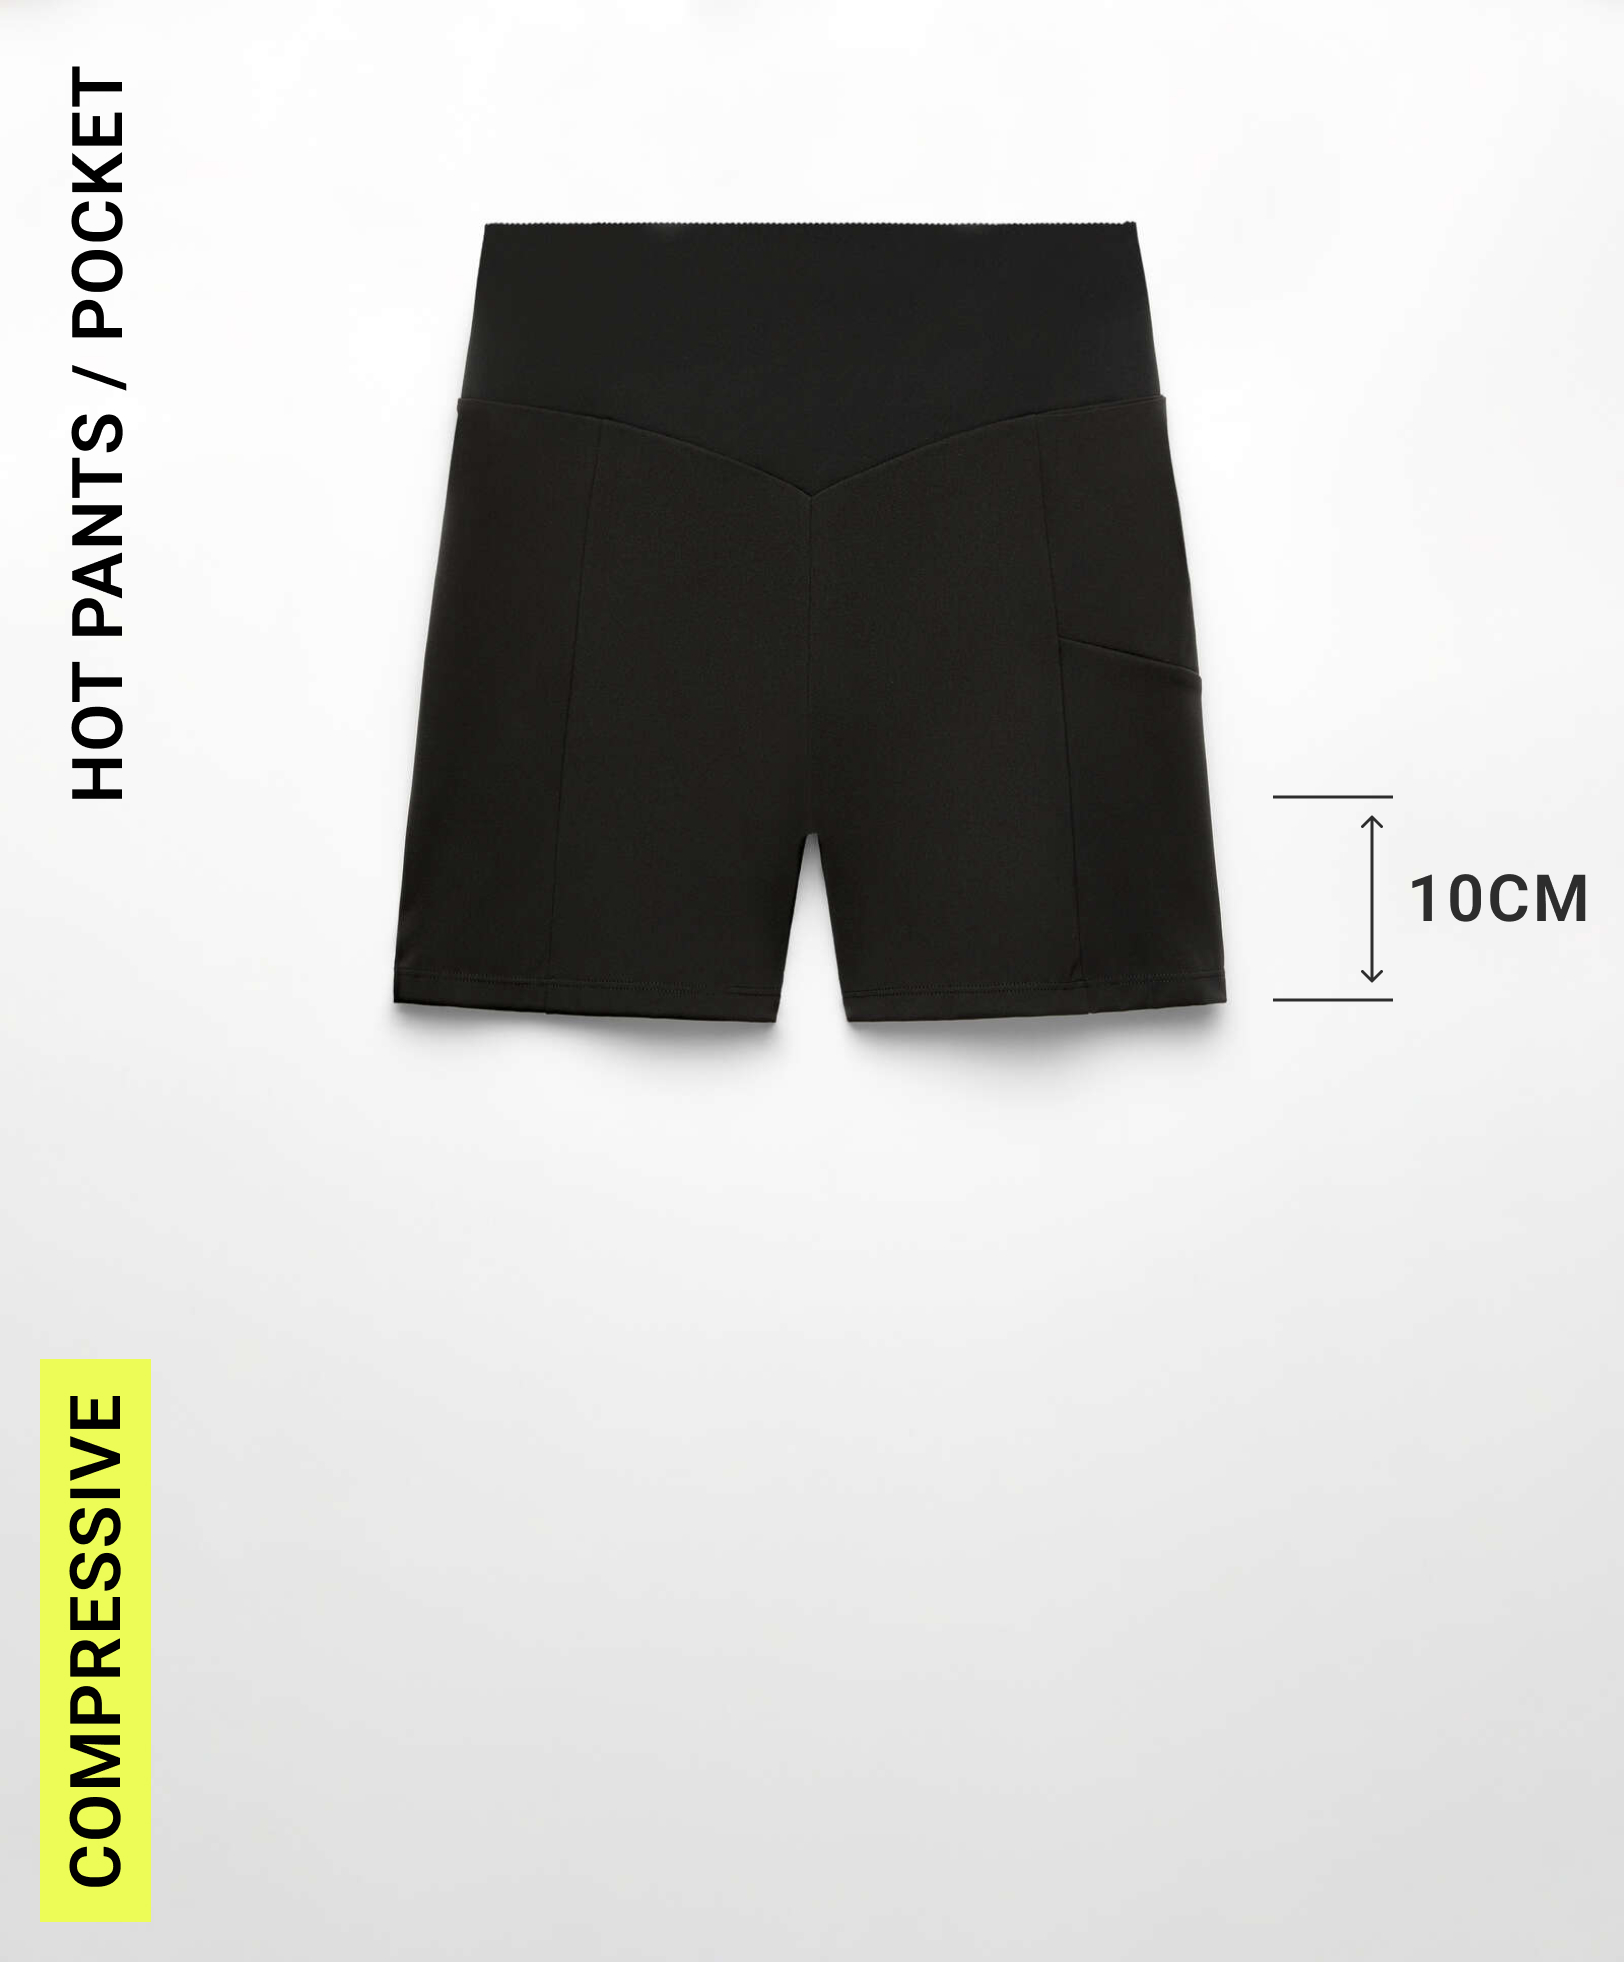 Hot pants compressive pocket 10 cm